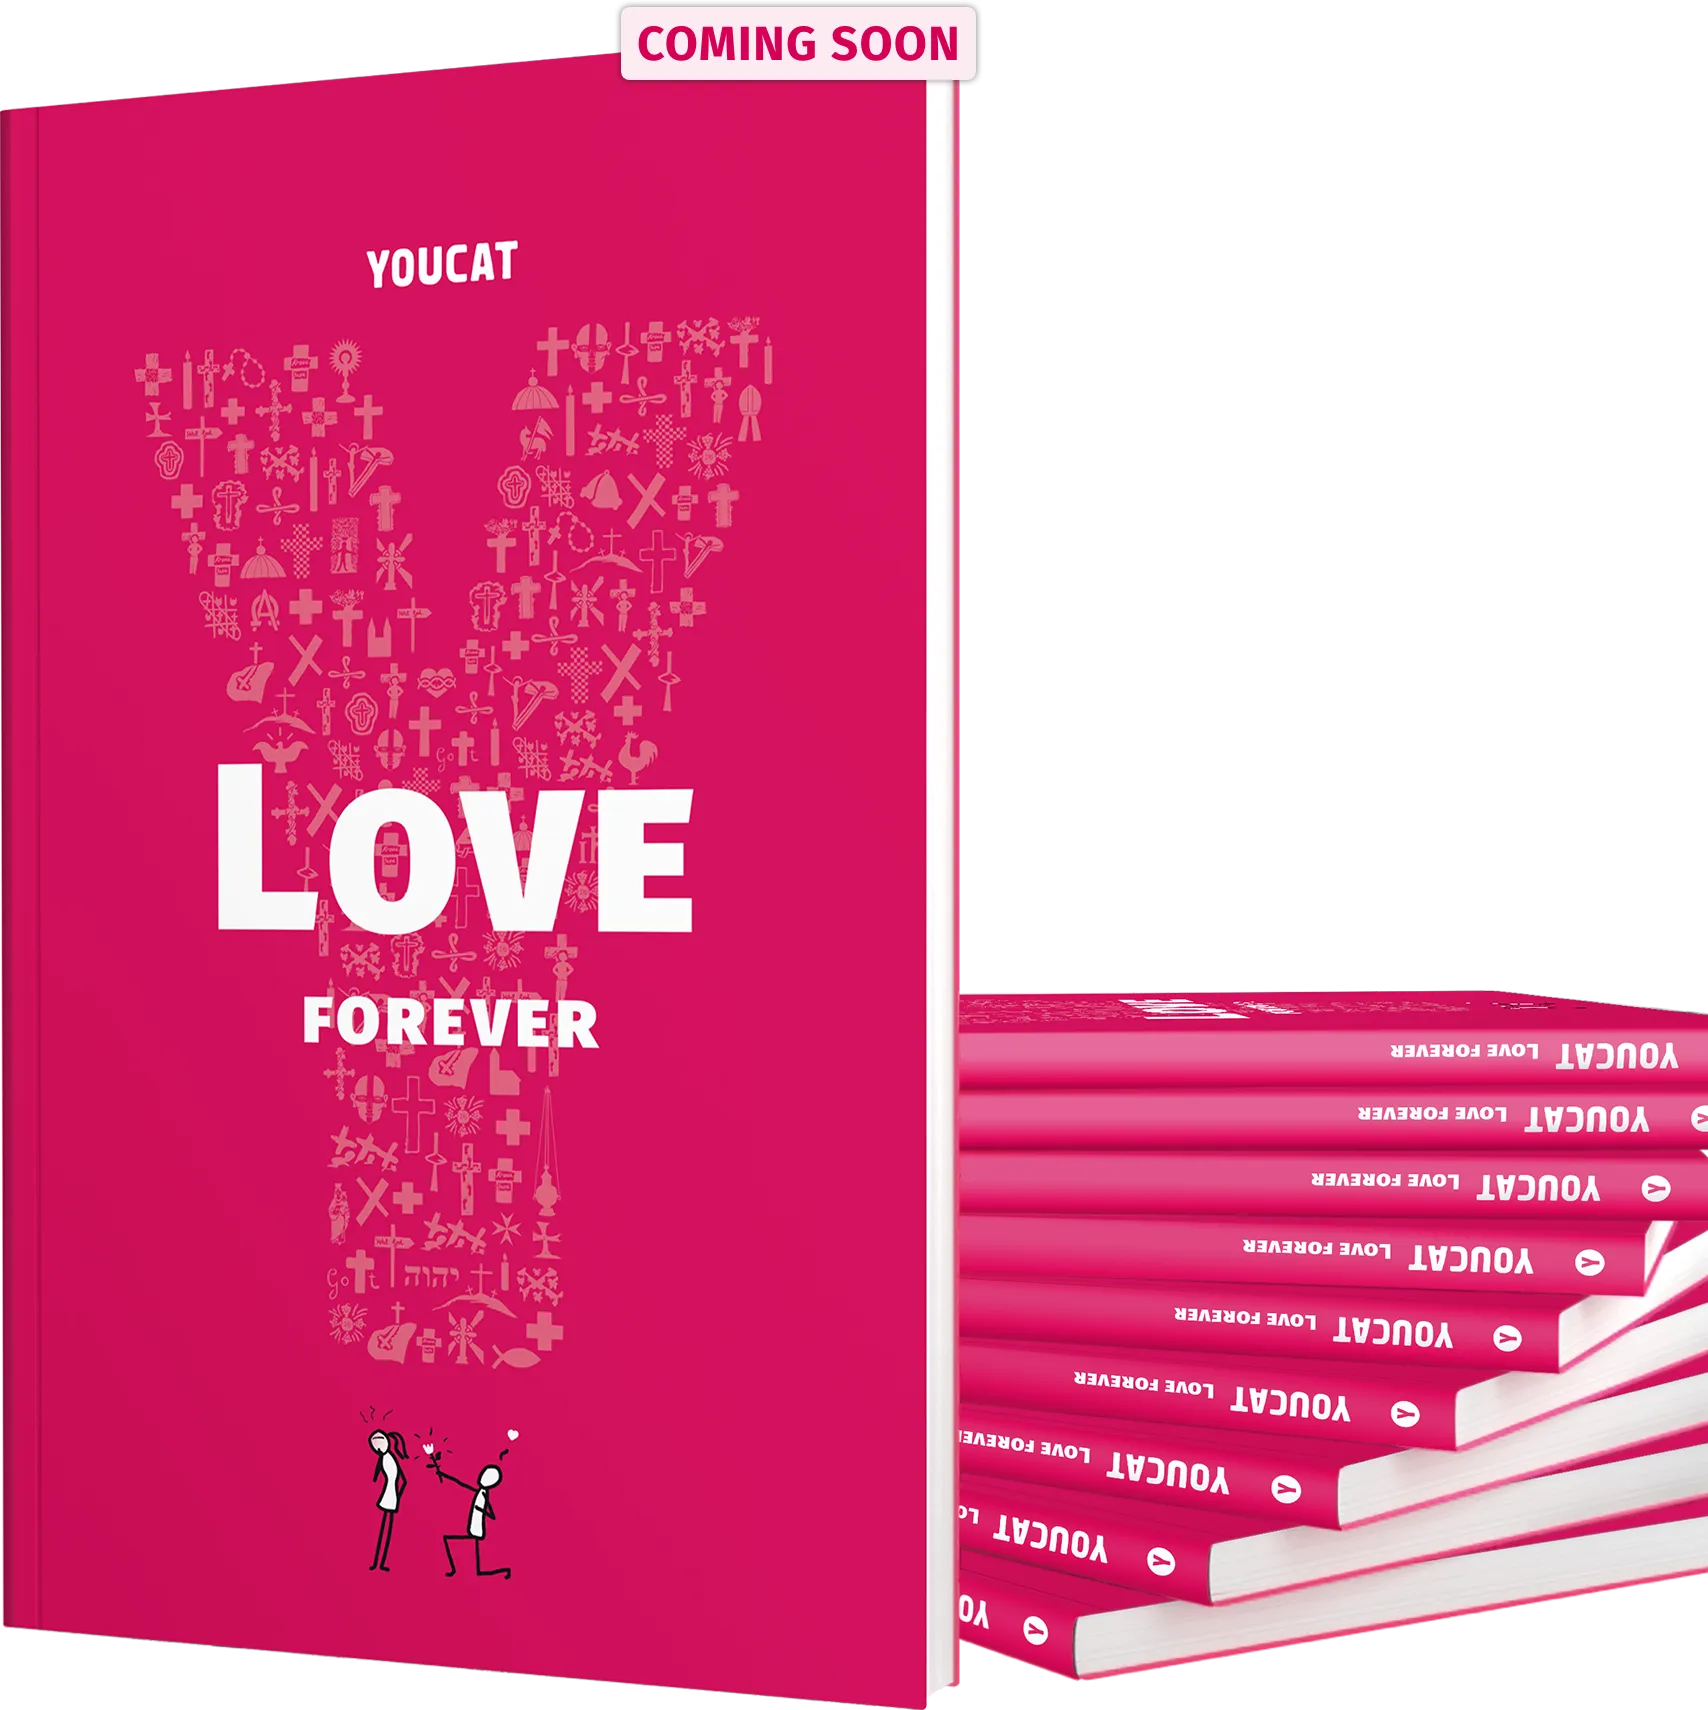 YOUCAT-Love-forever_Mockup_Books-Hero_EN